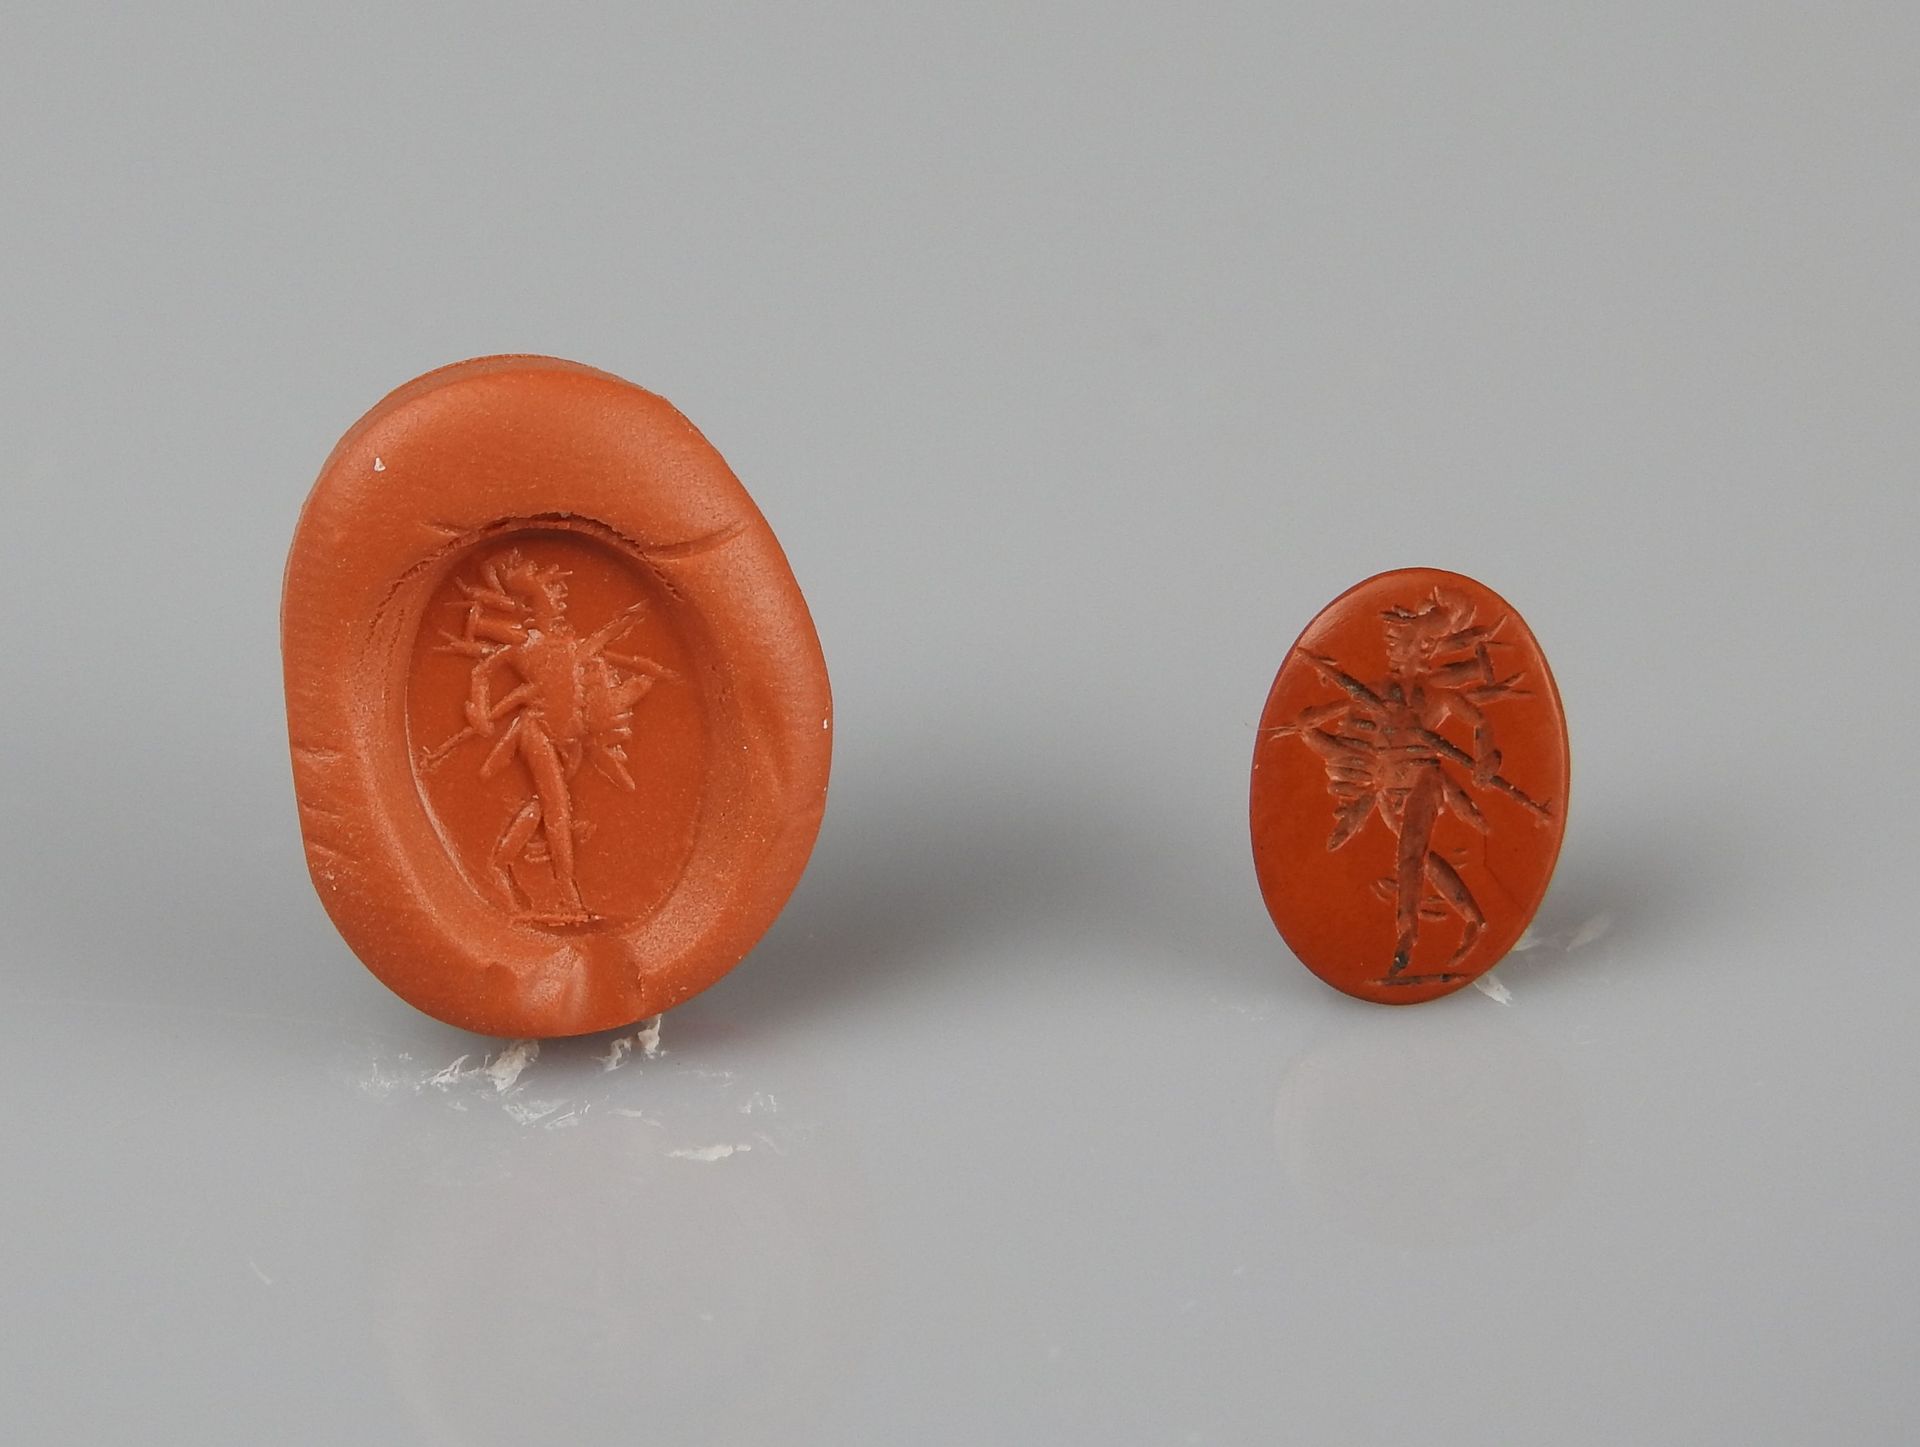 Null 凹版画表现火星的武装和头盔

碧玉1.1厘米

罗马时期